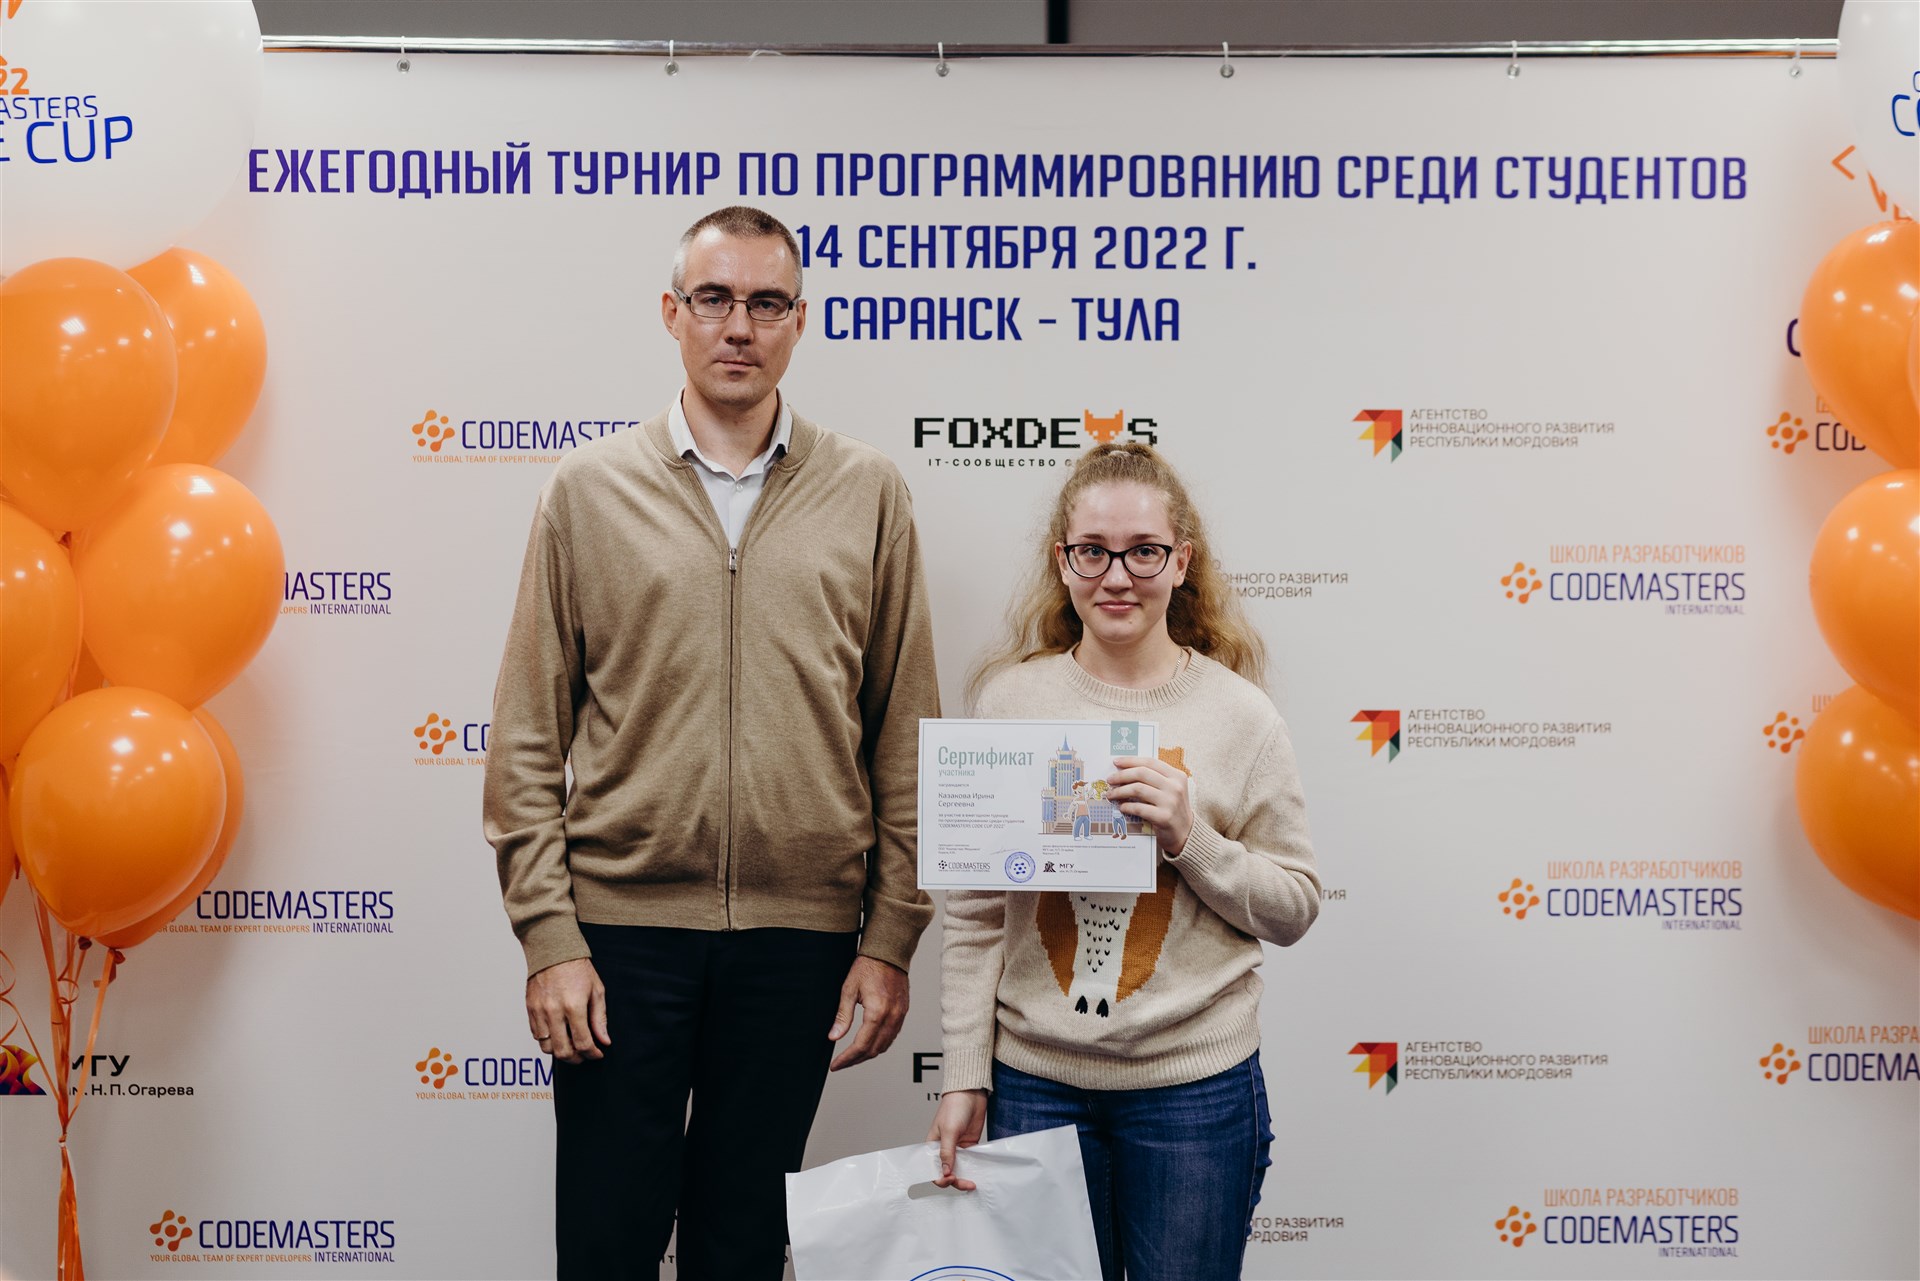 Codemasters Code Cup Саранск 2022 - 14